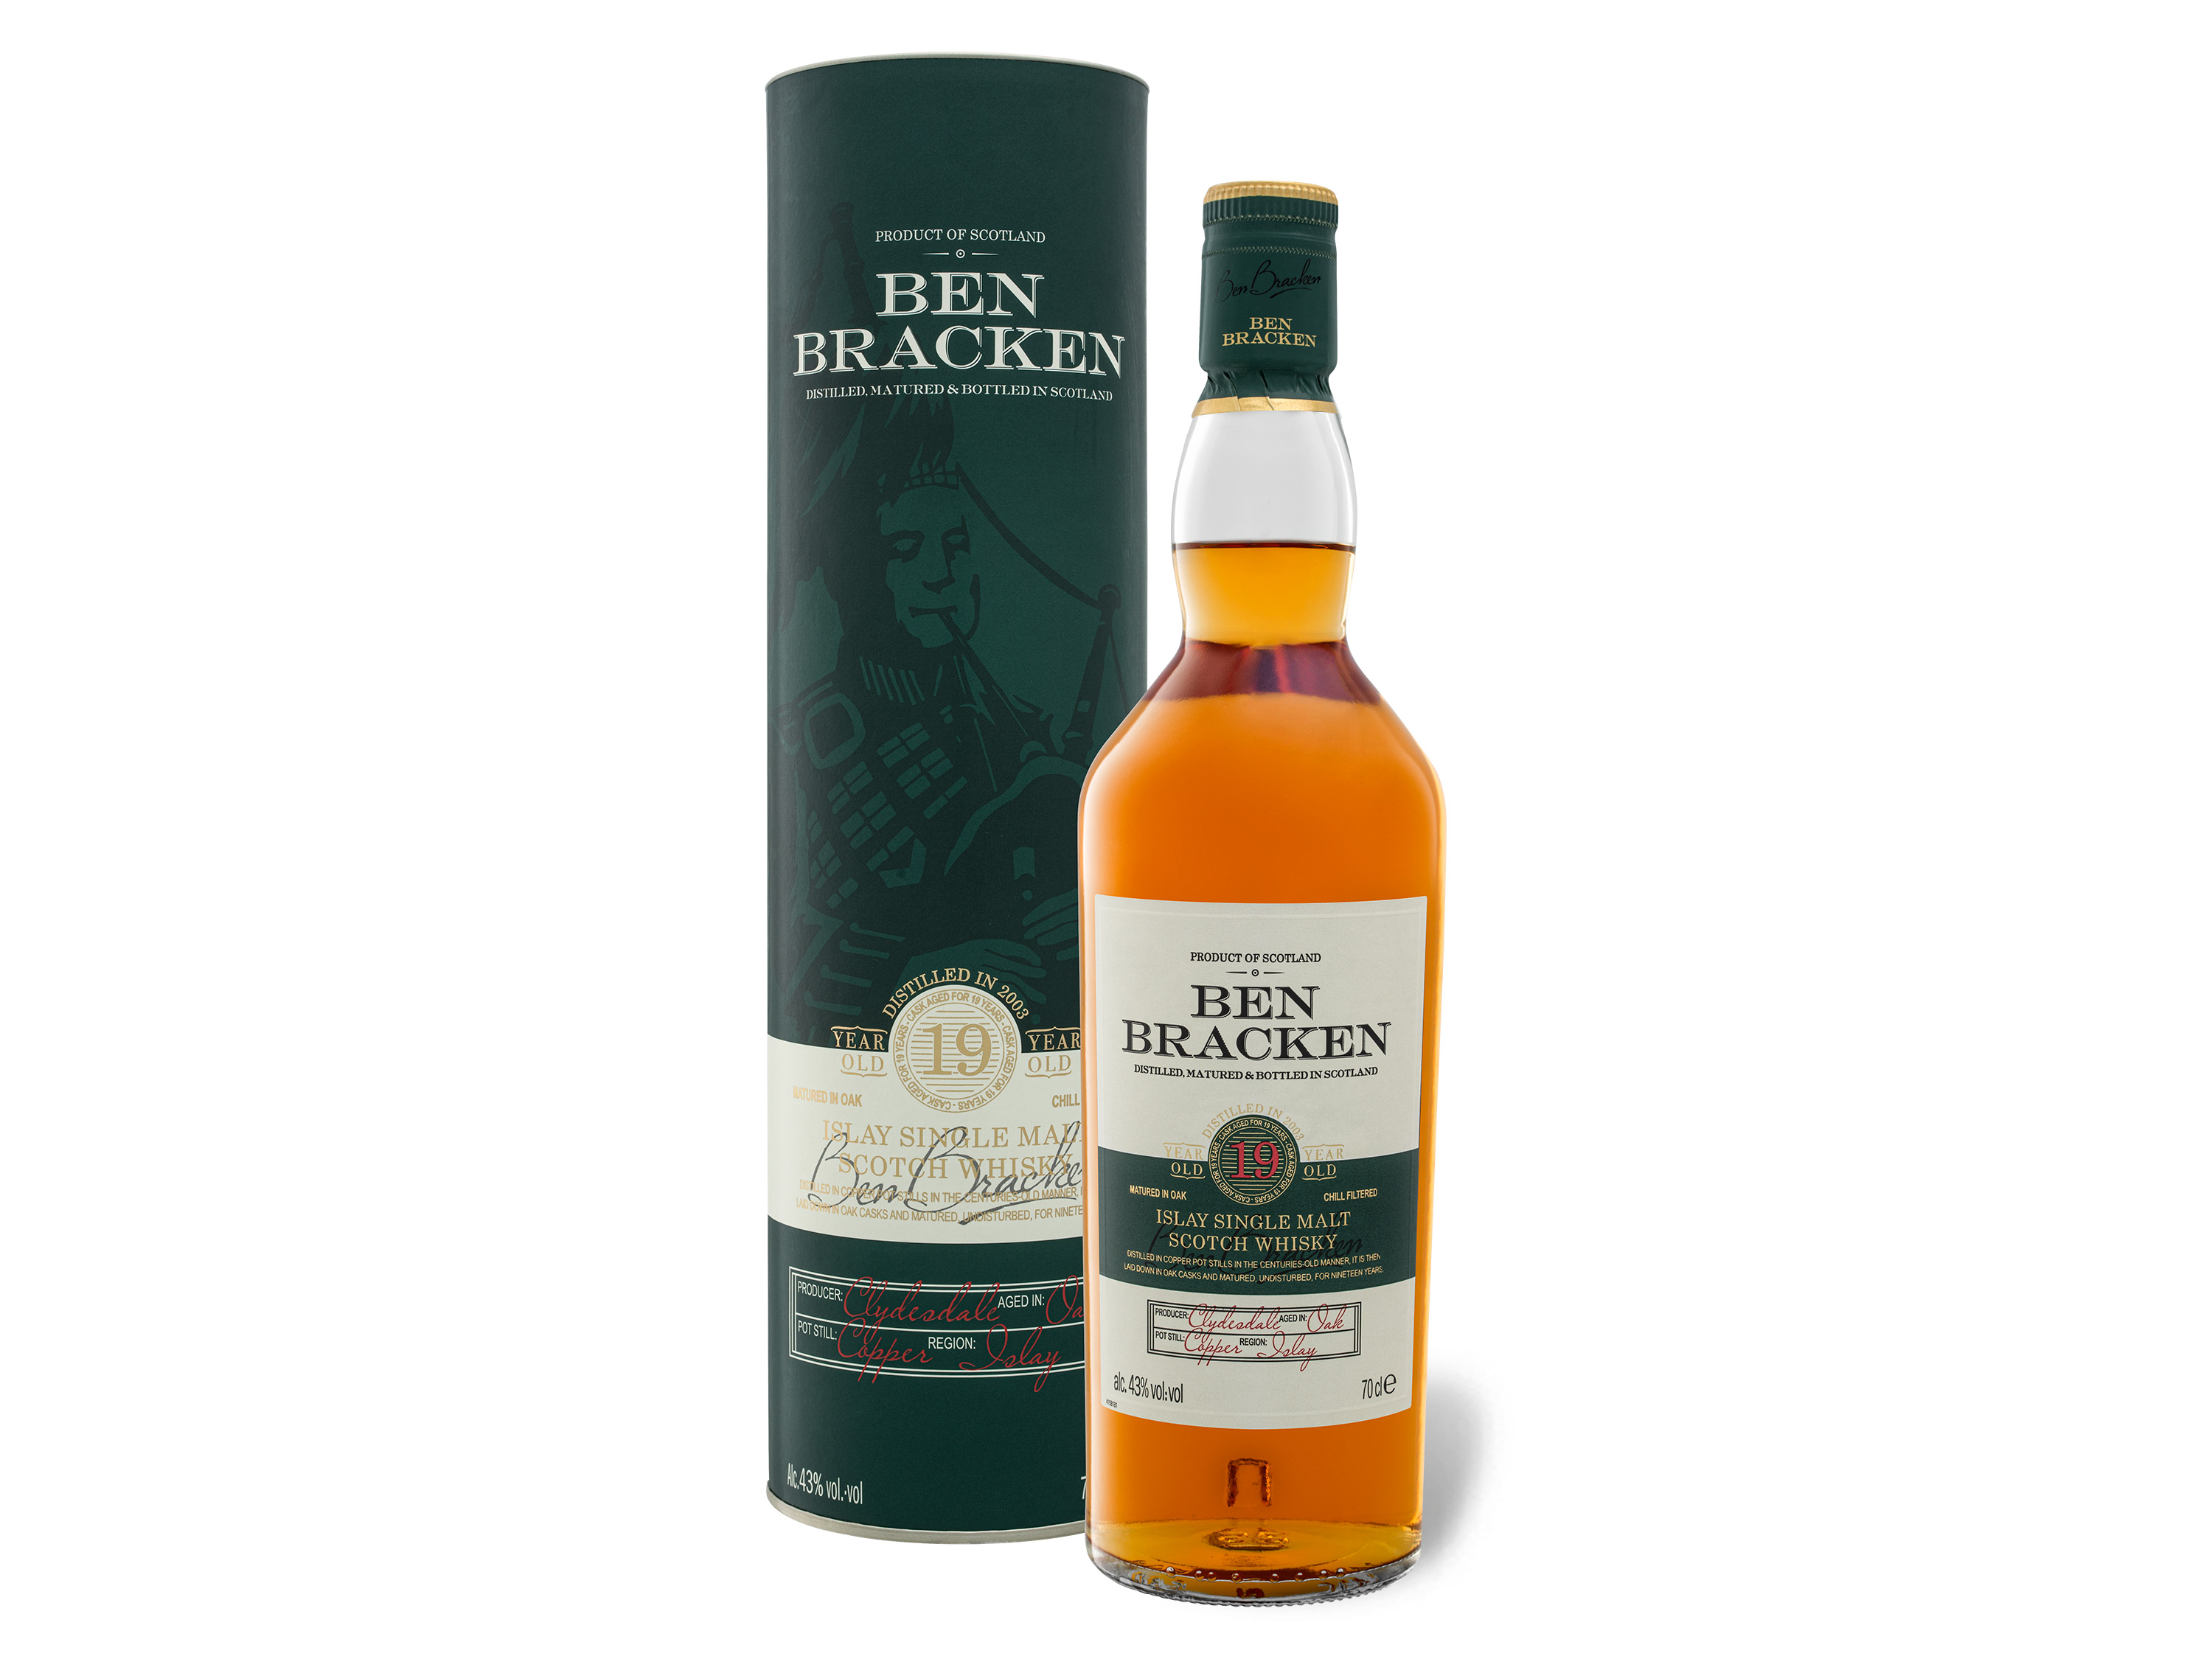 Ben Bracken Islay Single Malt Scotch Whisky 19 Jahre 43% Vol